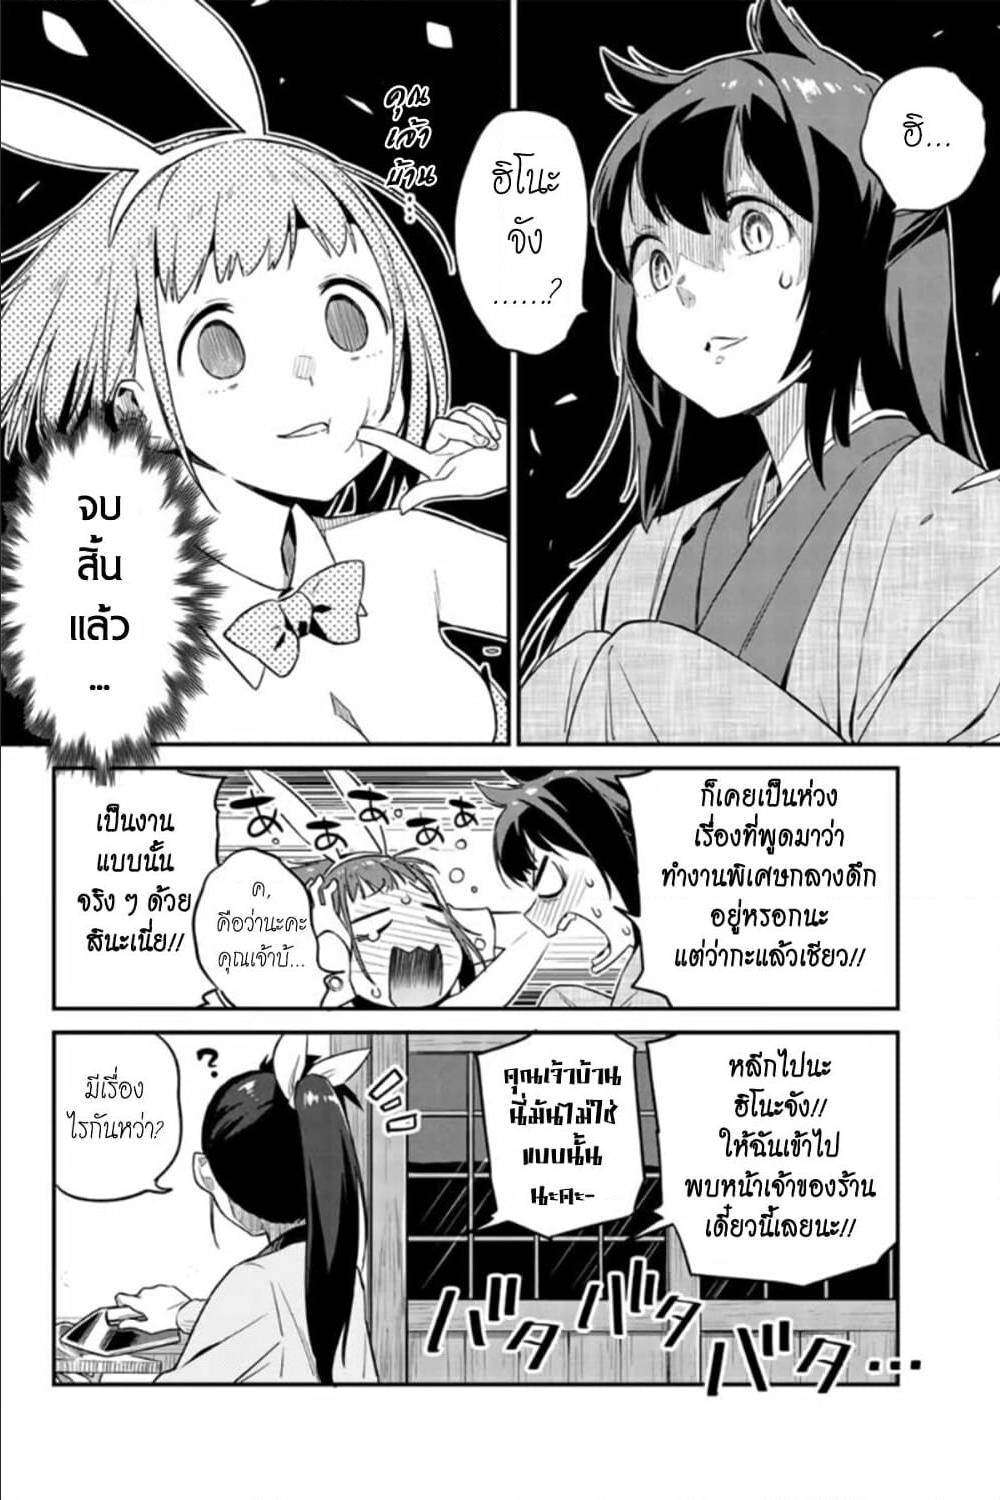 Youkai Izakaya non Bere ke 5 (14)